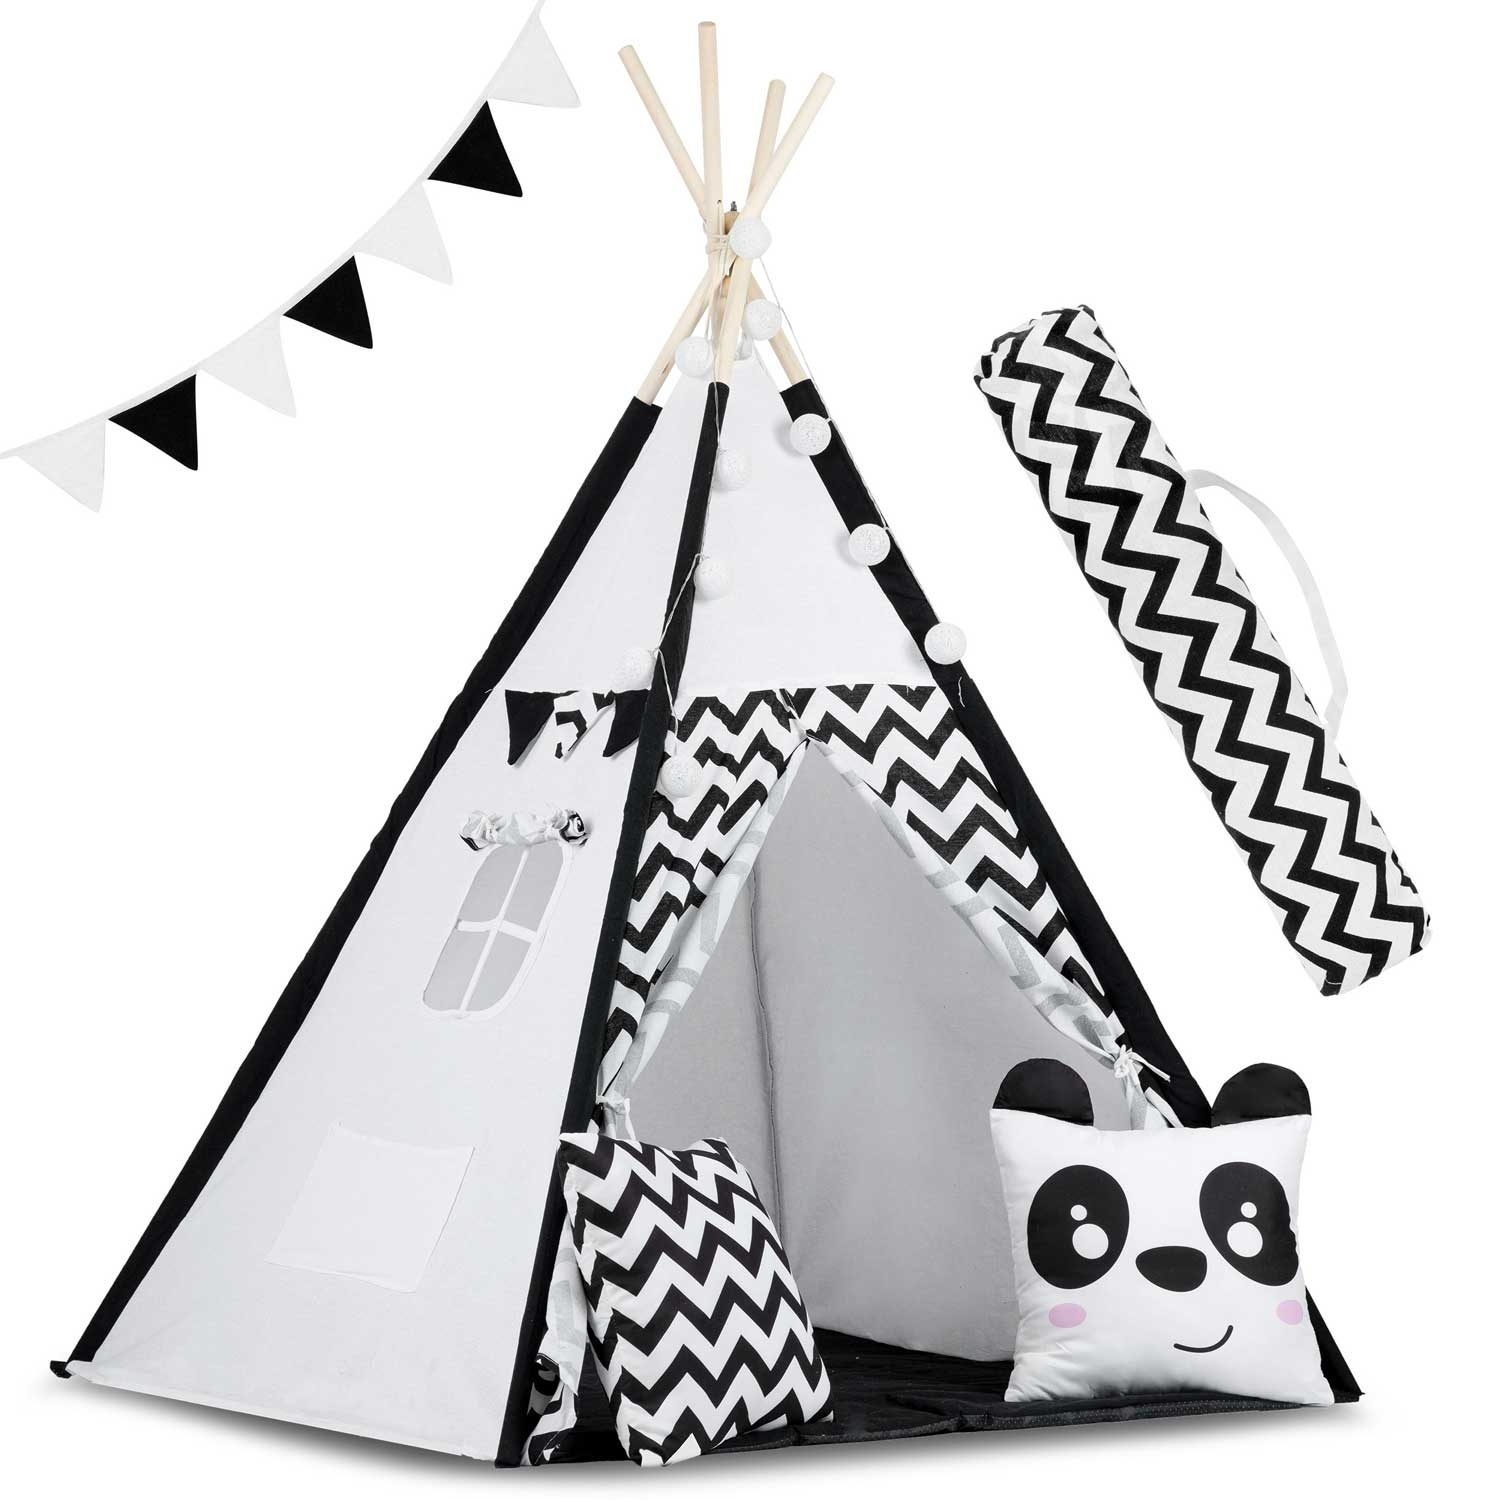 Wetland Boer Voorkeur Tipi tent - speeltent - zwart wit panda - met kussens & lampjes -  Vikingchoice.shop